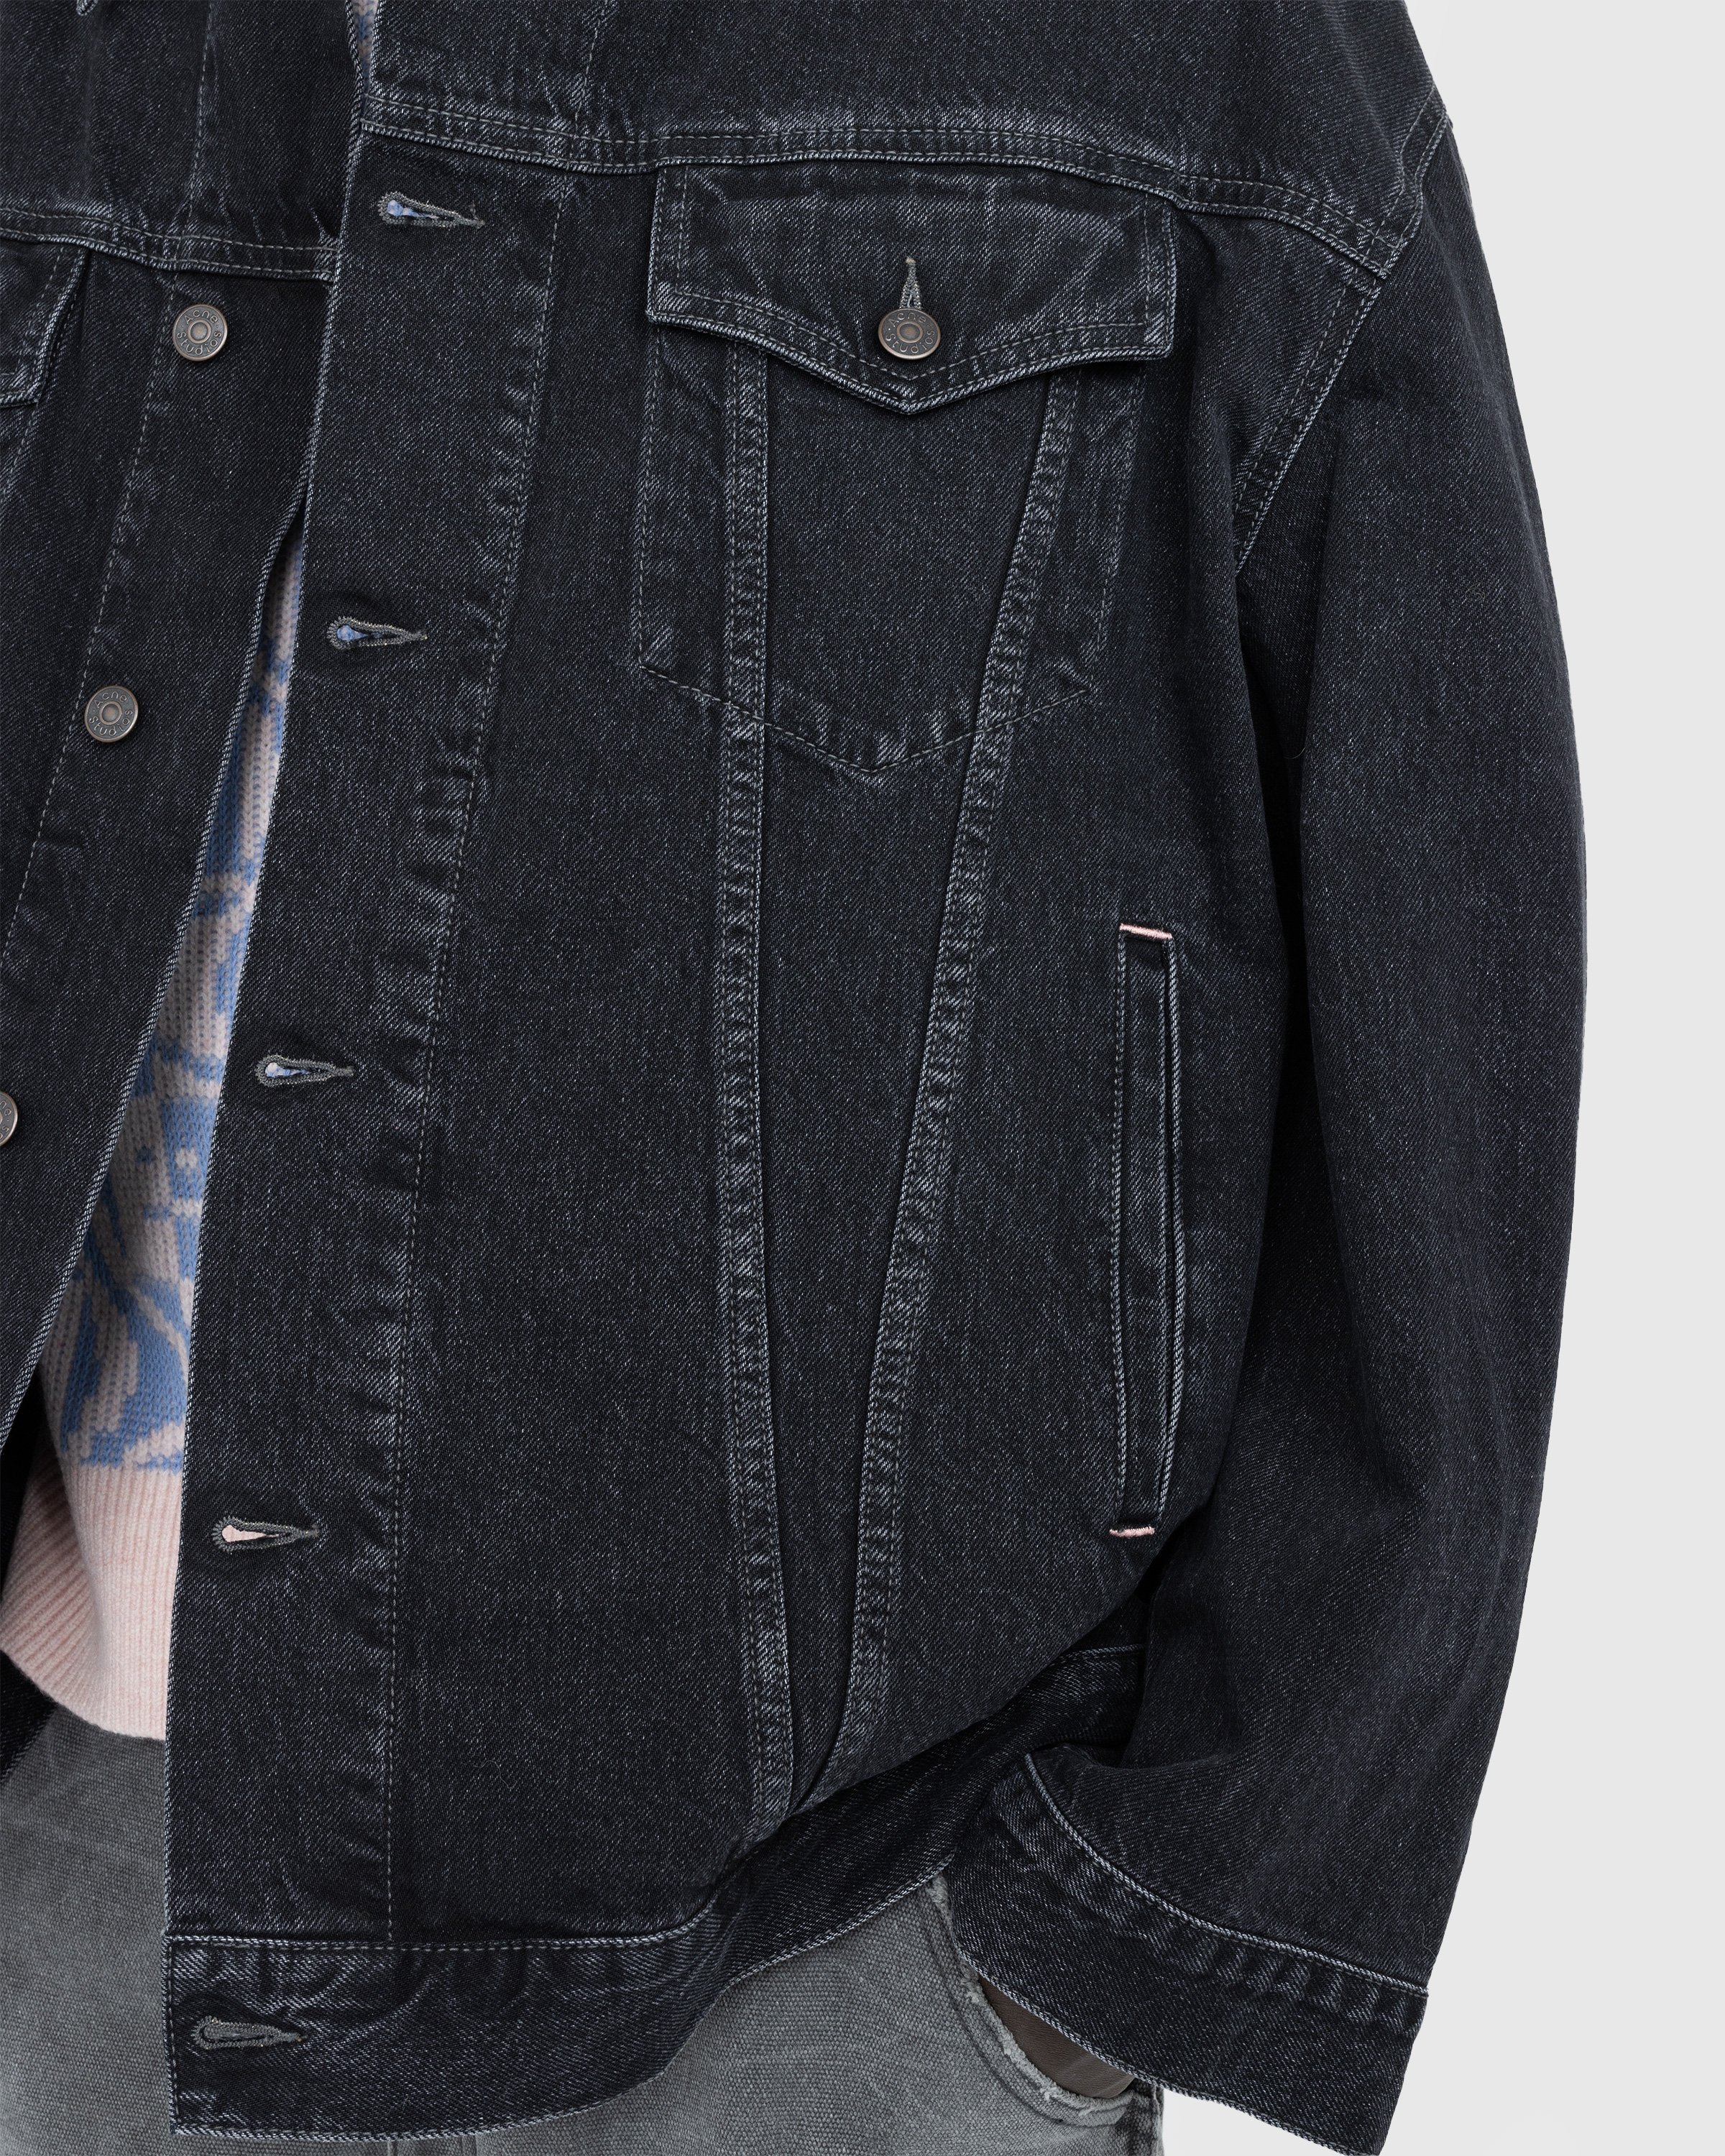 Acne Studios - Oversized Denim Jacket Black - Clothing - Black - Image 5